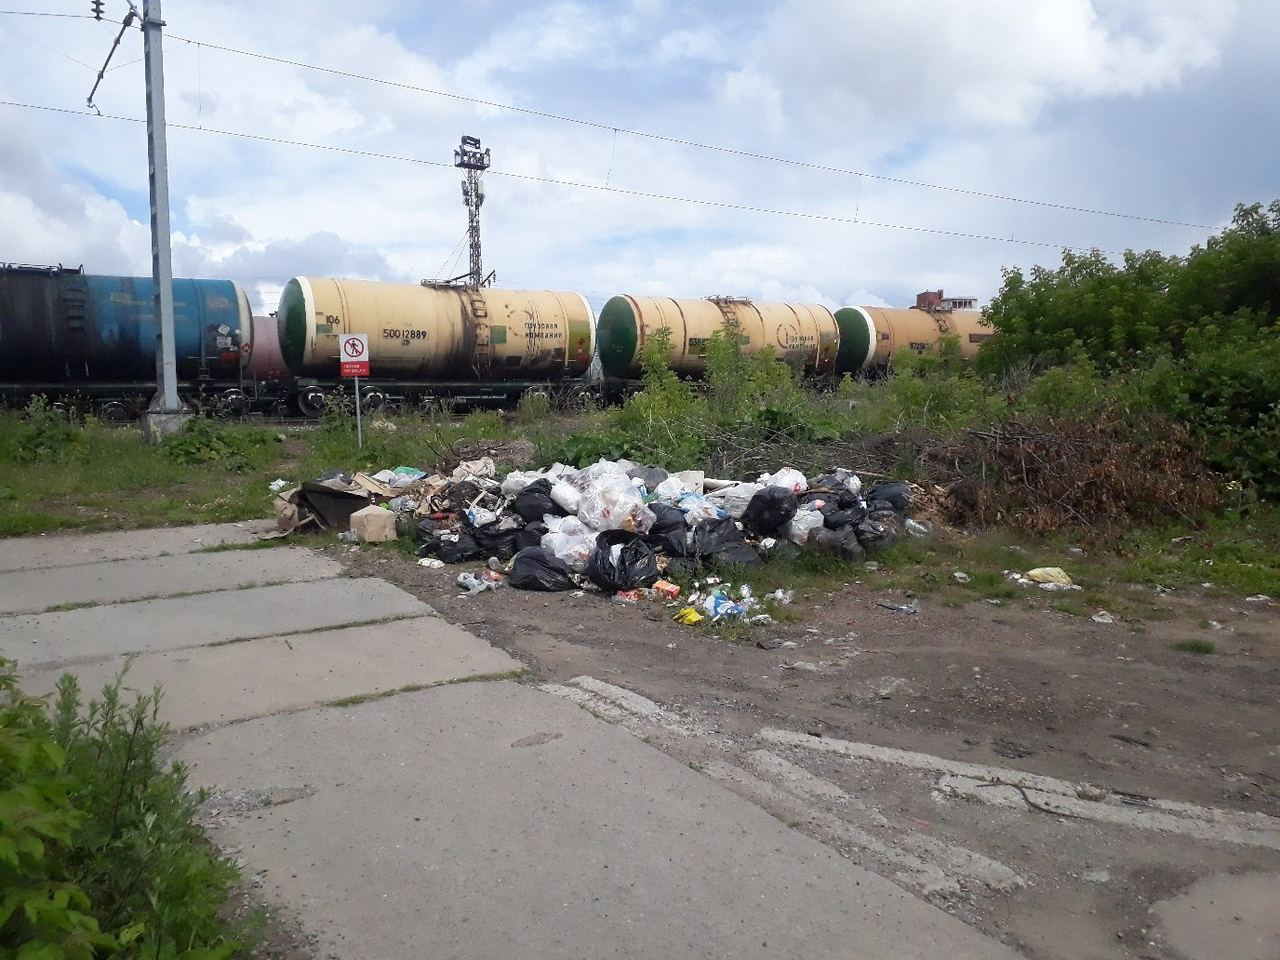 В Кировской области тарифы на вывоз ТБО выросли, а мусор остался